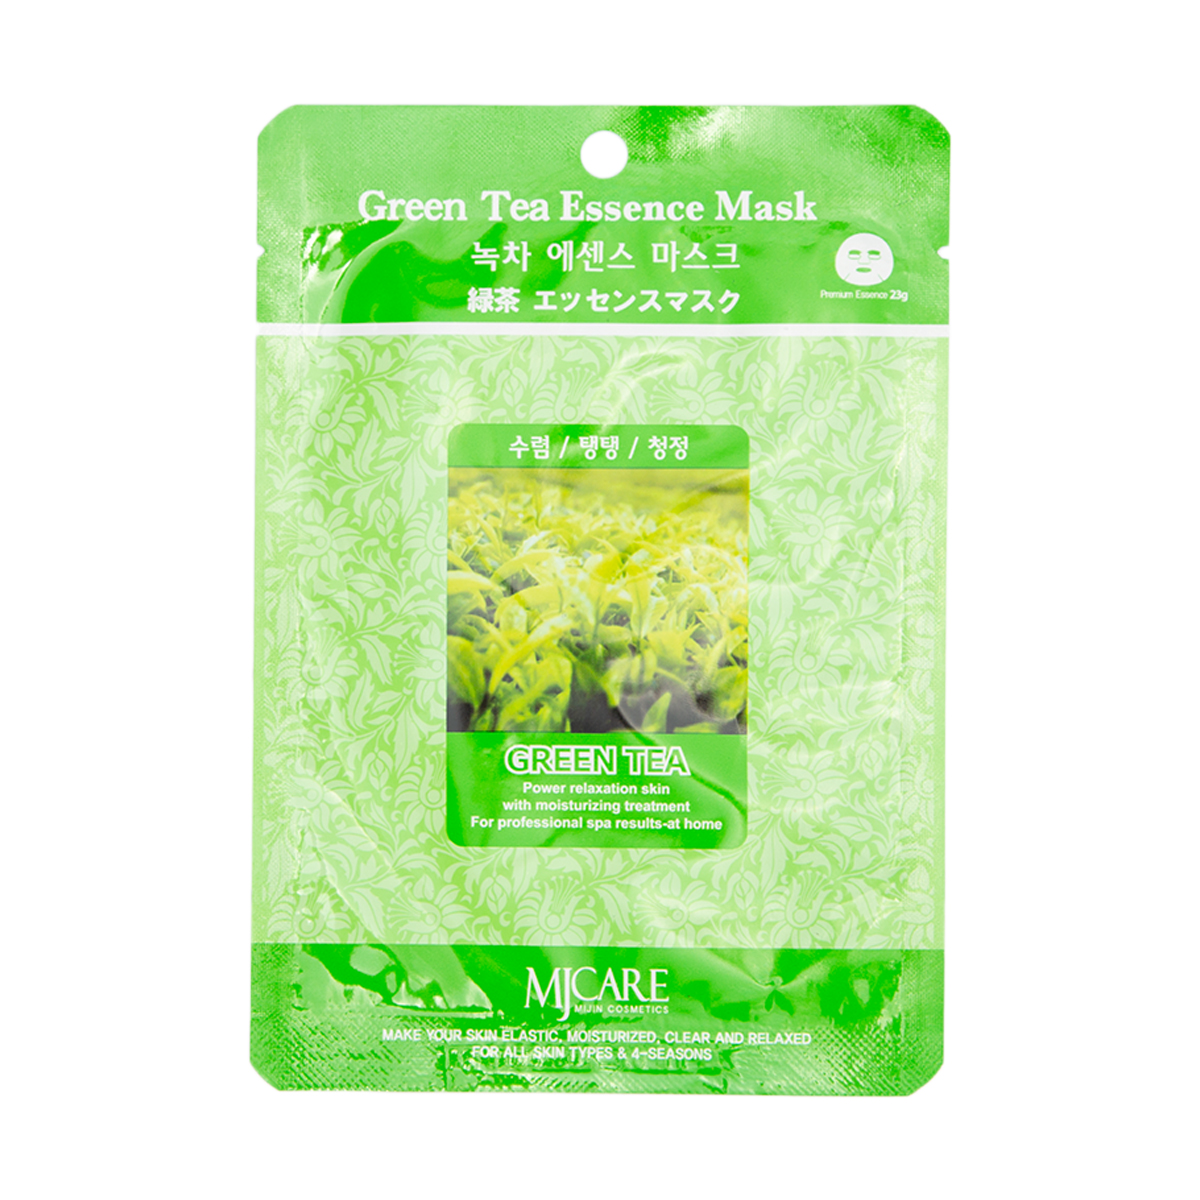 MJ Essence Маска тканевая зеленый чай Green Tea Essence Mask (23 г) маска тканевая зеленый чай mj care green tea essence mask 23г